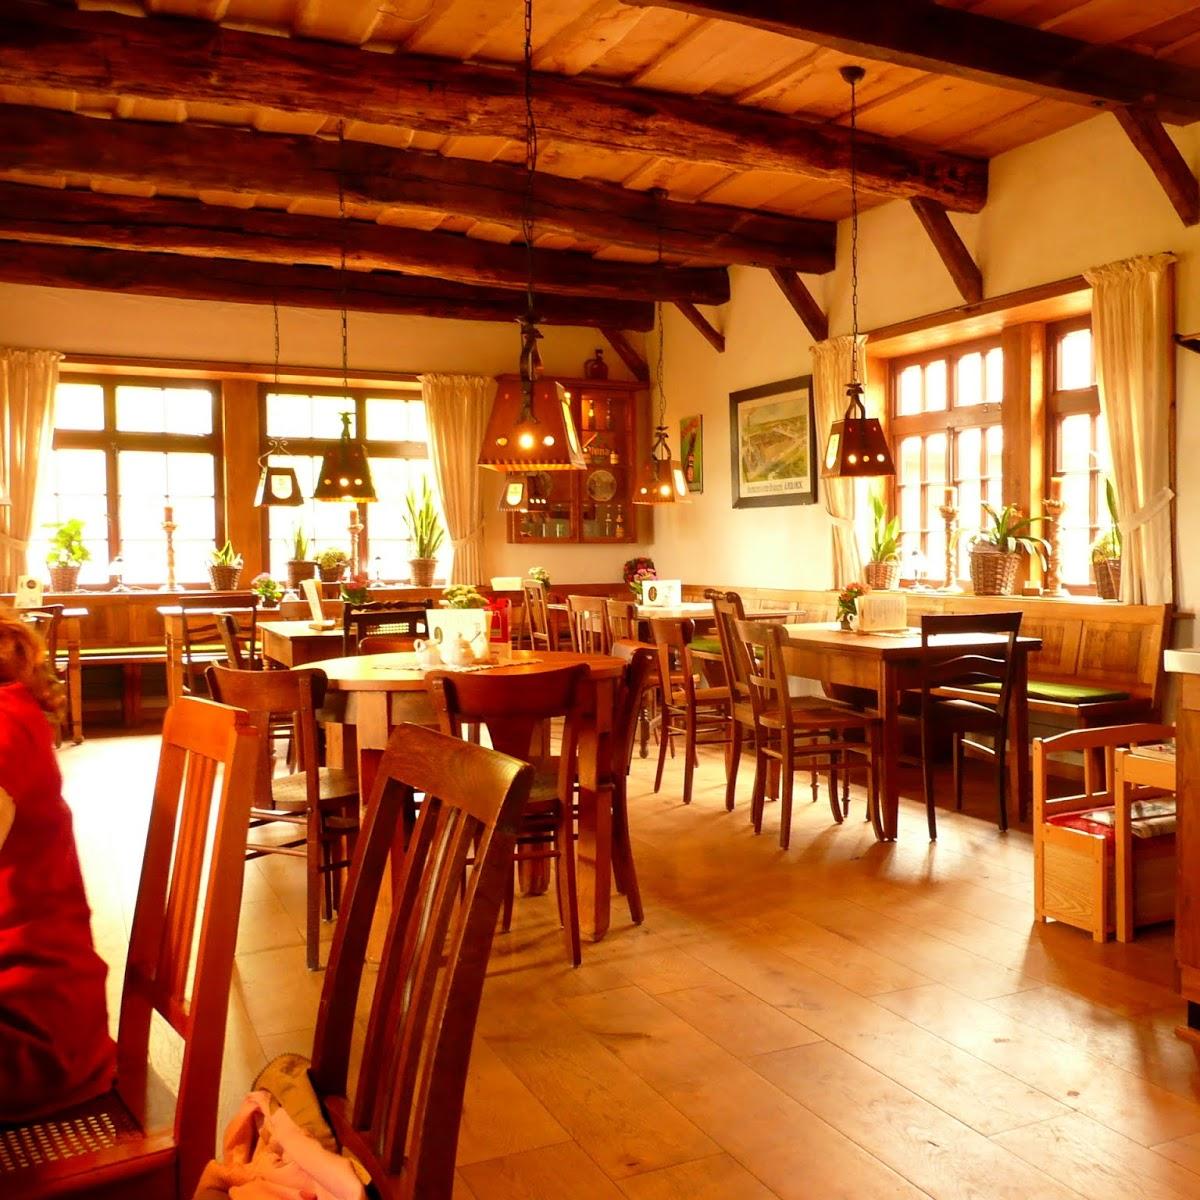 Restaurant "Gasthaus  De MalleJan " in Nordhorn